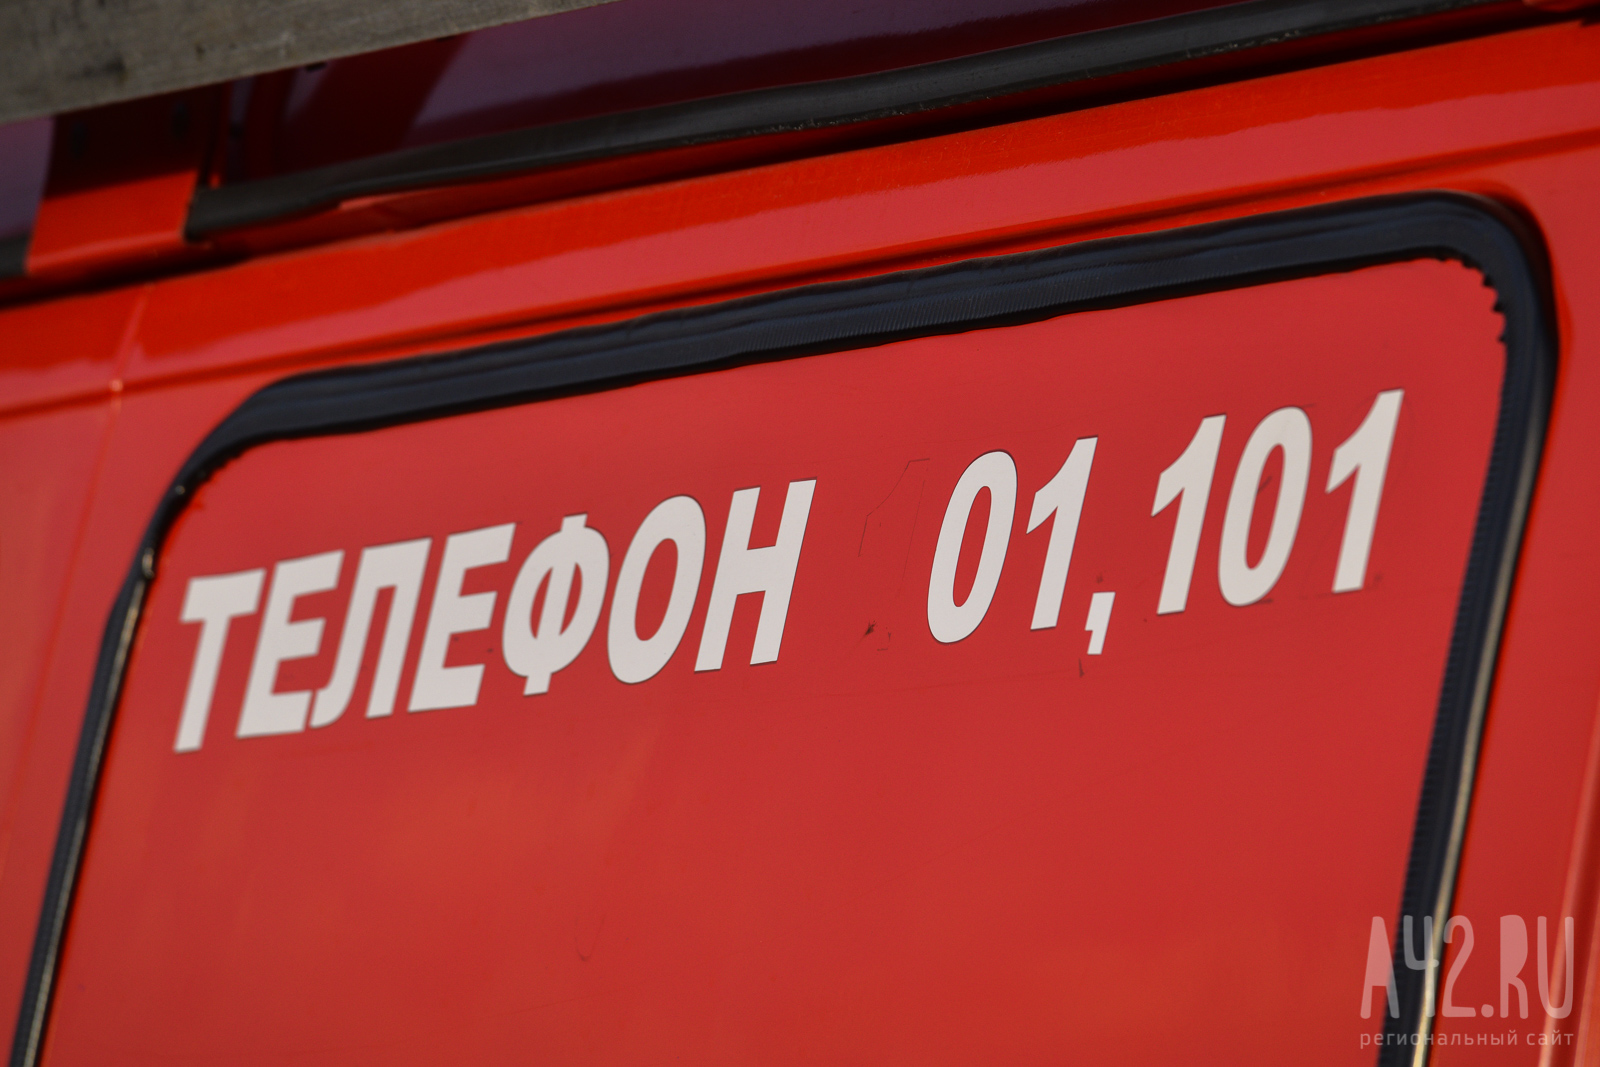 В Нижневартовске произошёл взрыв газа на канализационной насосной станции. Есть пострадавшие